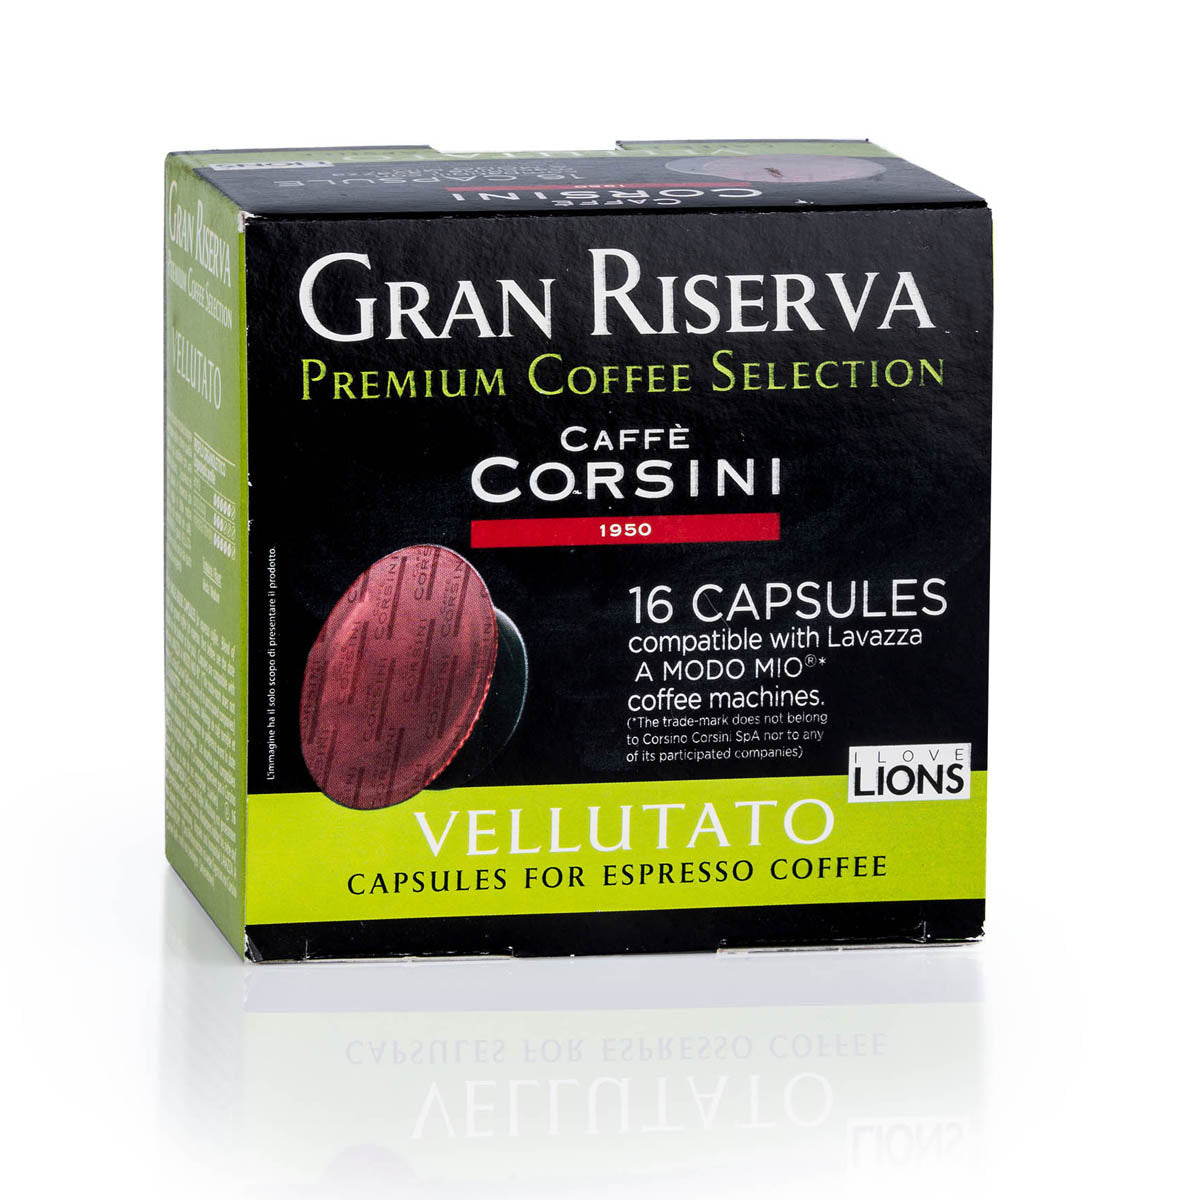 16 Lavazza®* A Modo Mio®* compatible coffee capsules per pack | Gran Riserva Vellutato | Box of 12